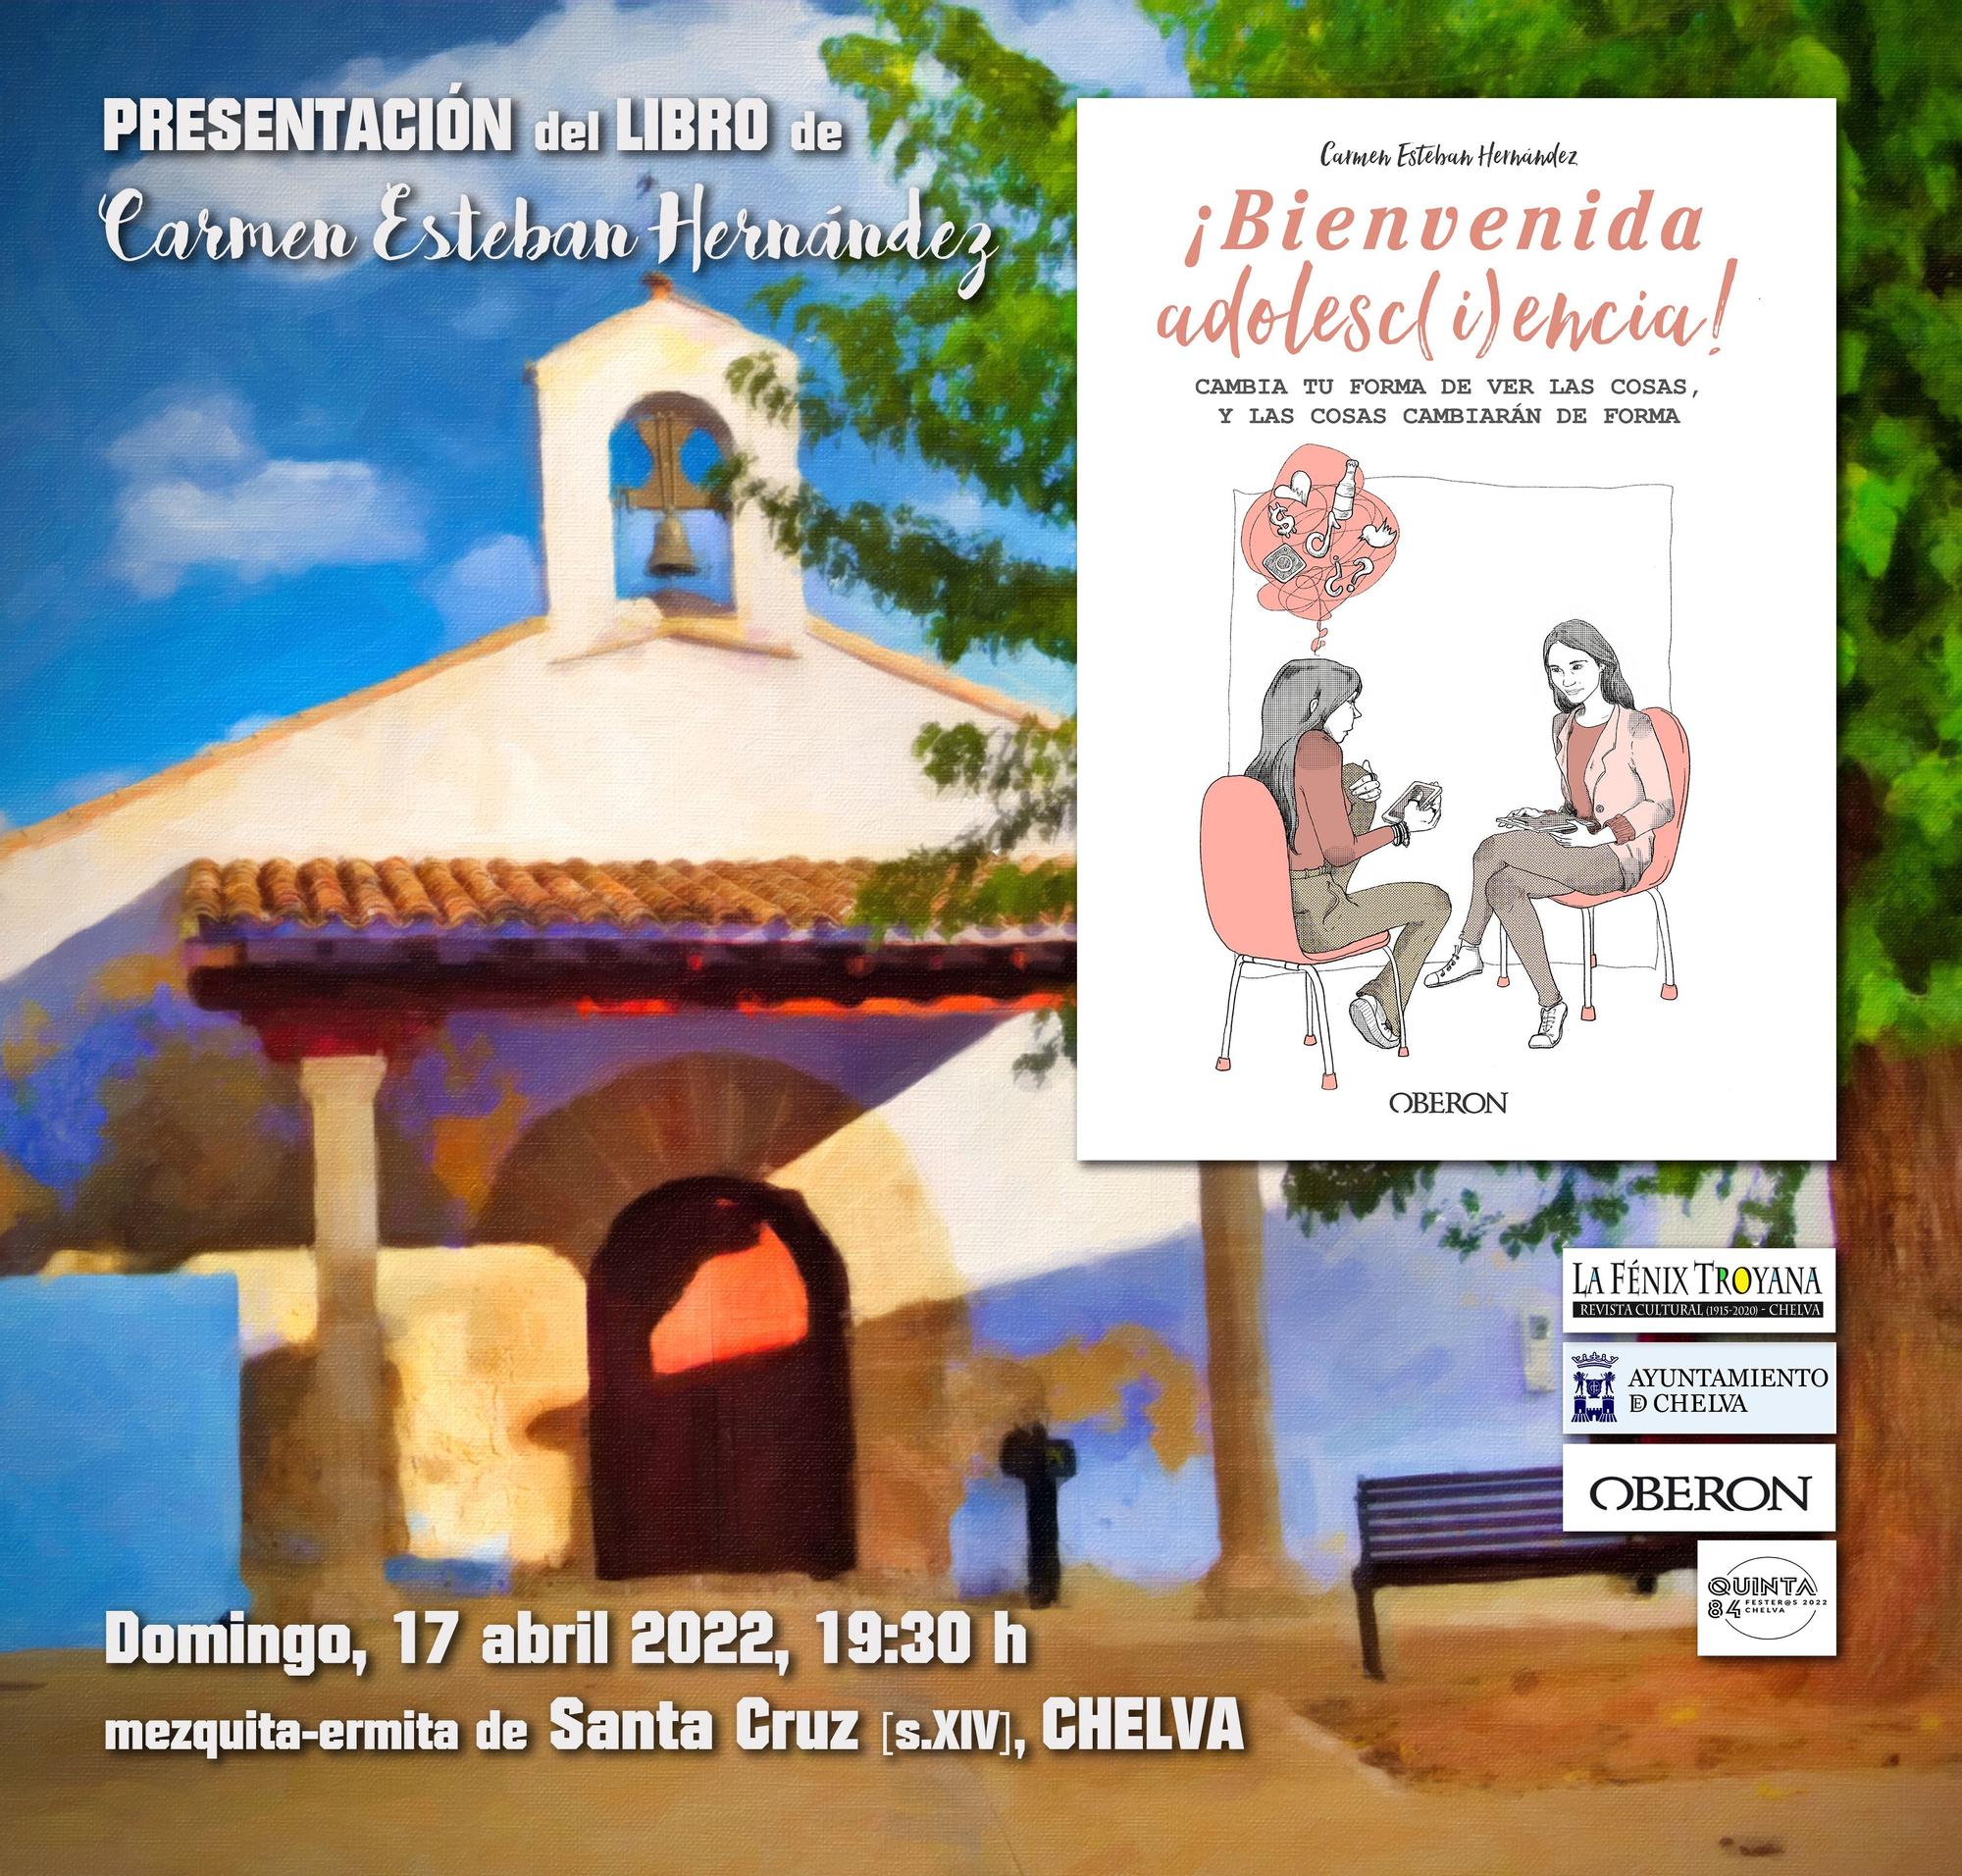 Presentación del libro de Carmen Esteban en Chelva